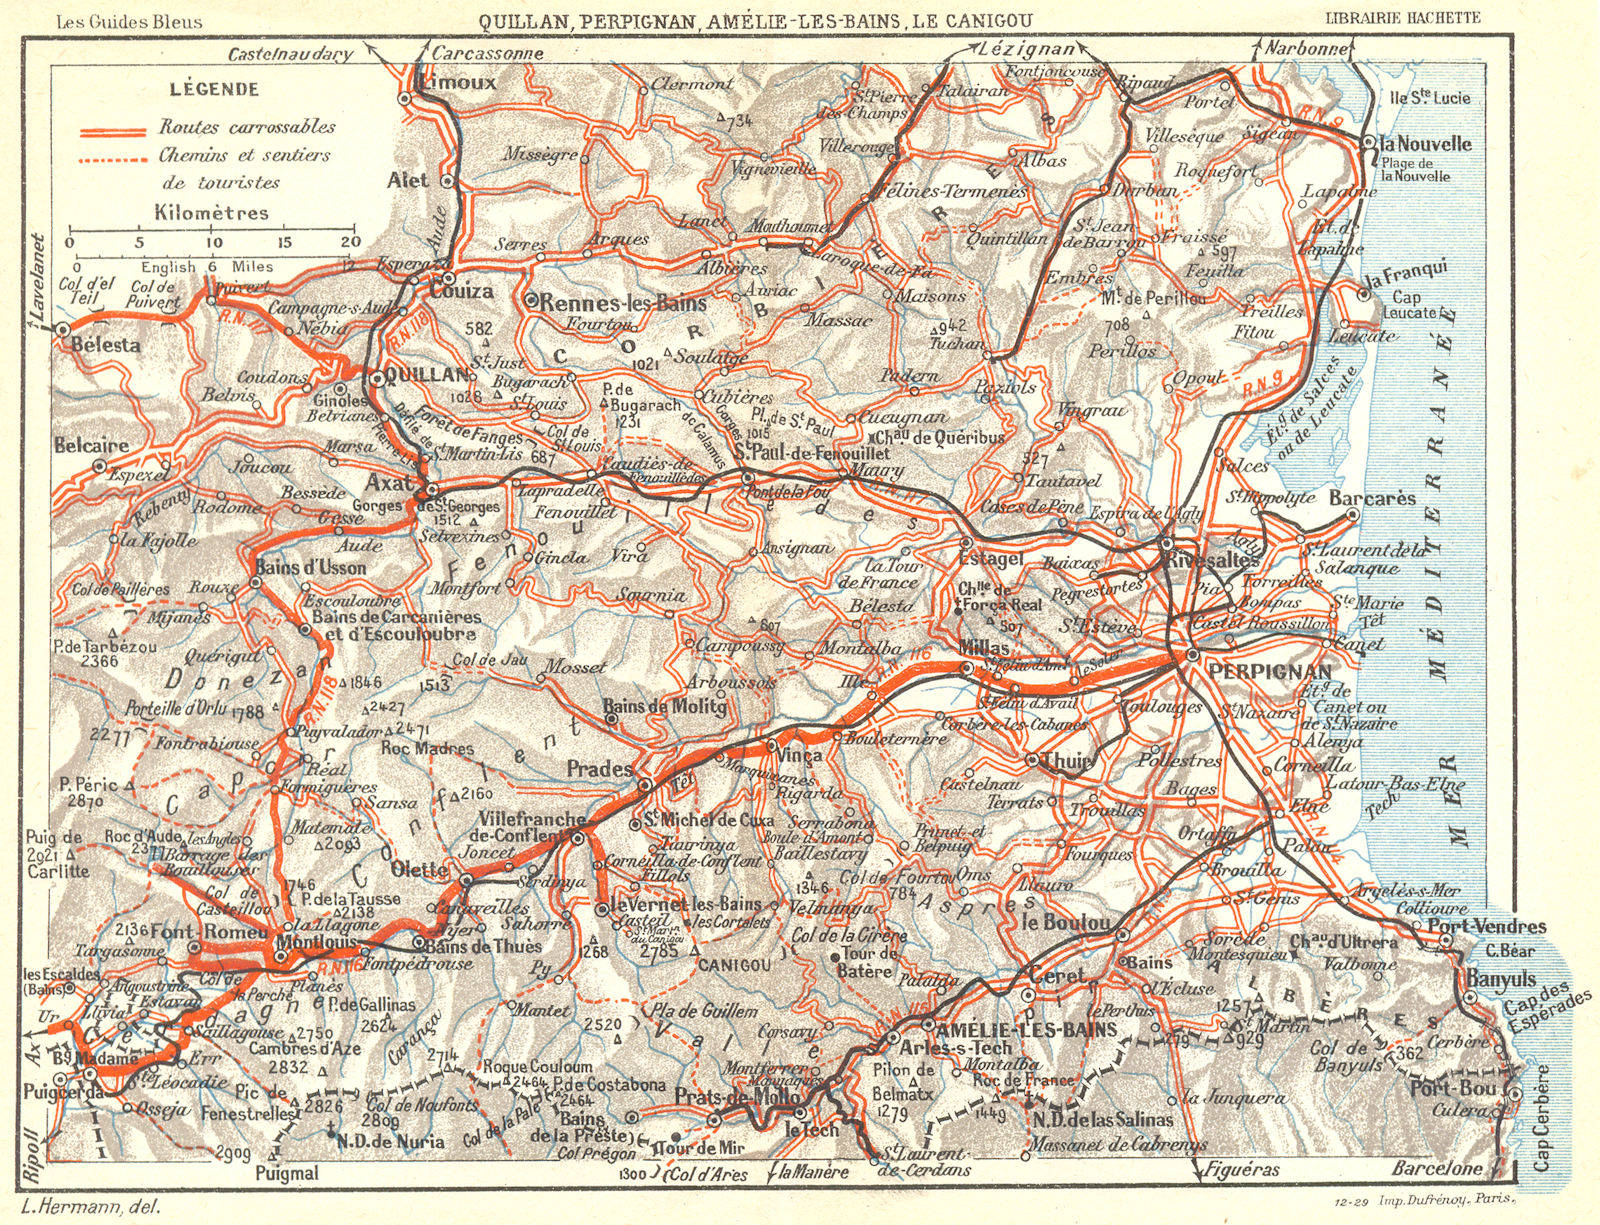 PERPIGNAN. Quillan, Amelie-Bains, Le Canigou 1926 old vintage map plan chart